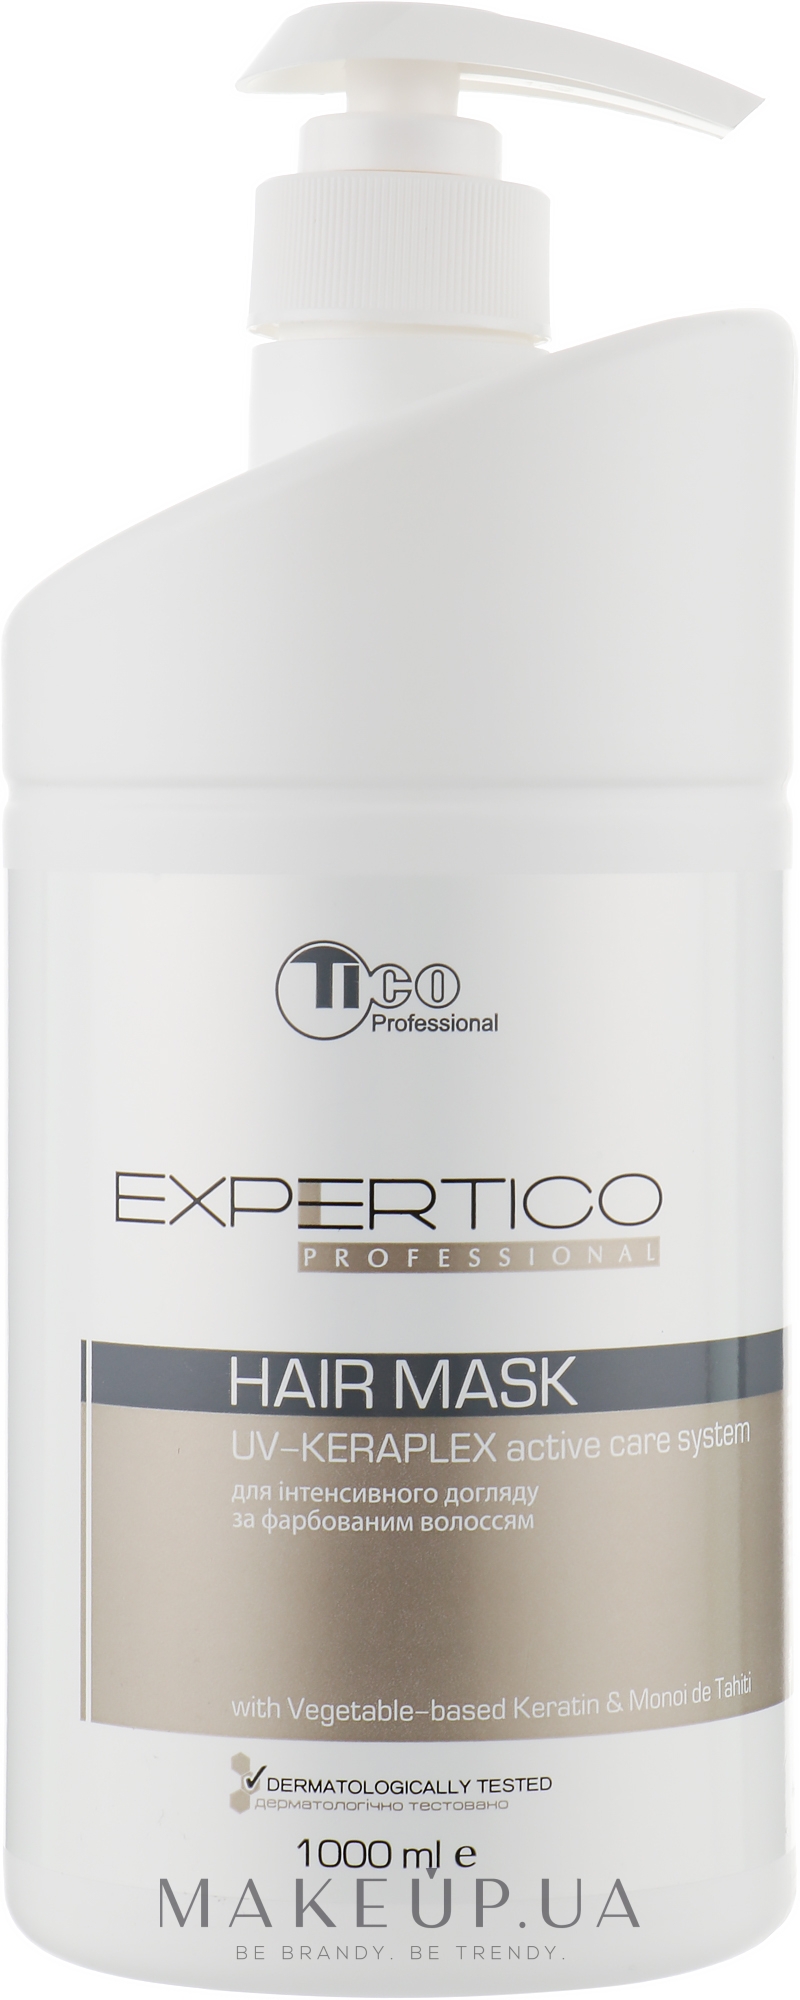 Восстанавливающая маска окрашенных волос - Tico Professional Expertico Uv-keraplex — фото 1000ml